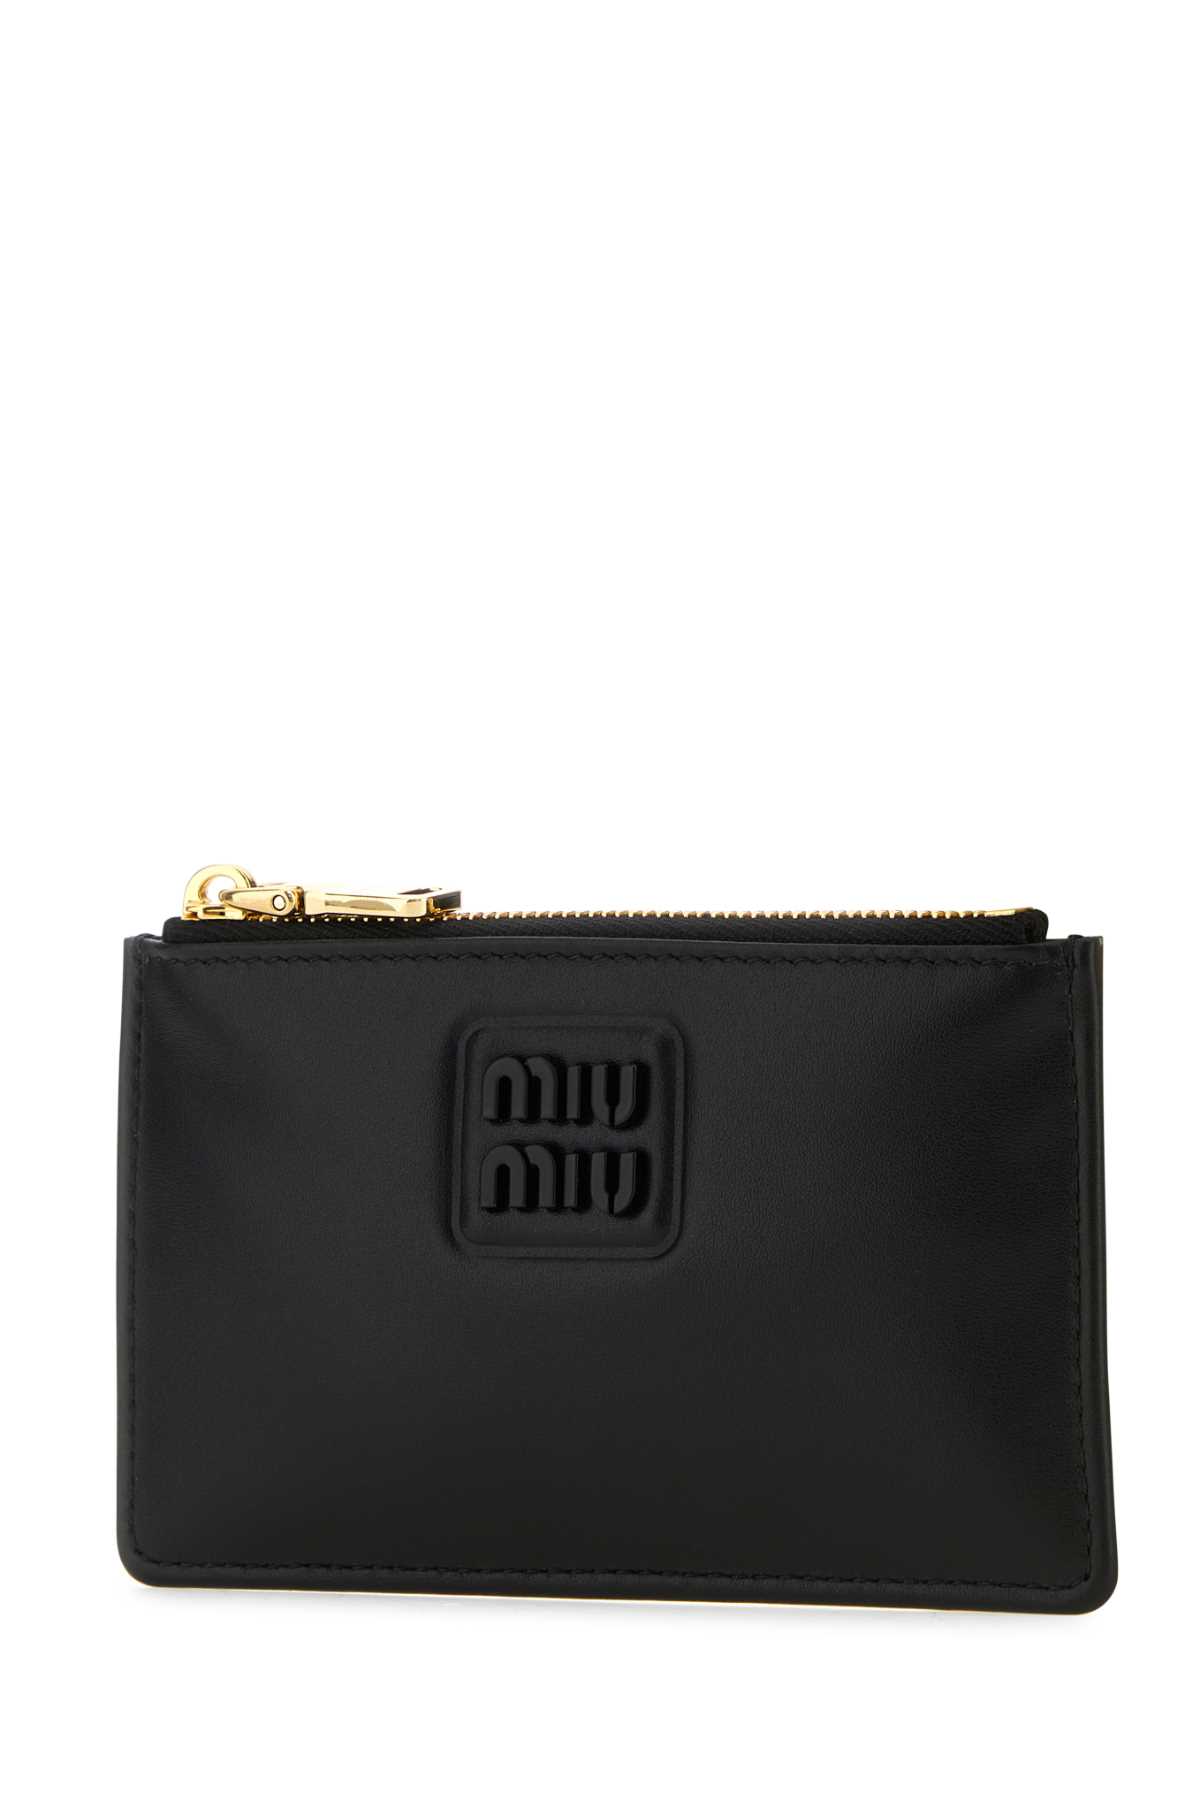 Shop Miu Miu Black Leather Card Holder In Nero